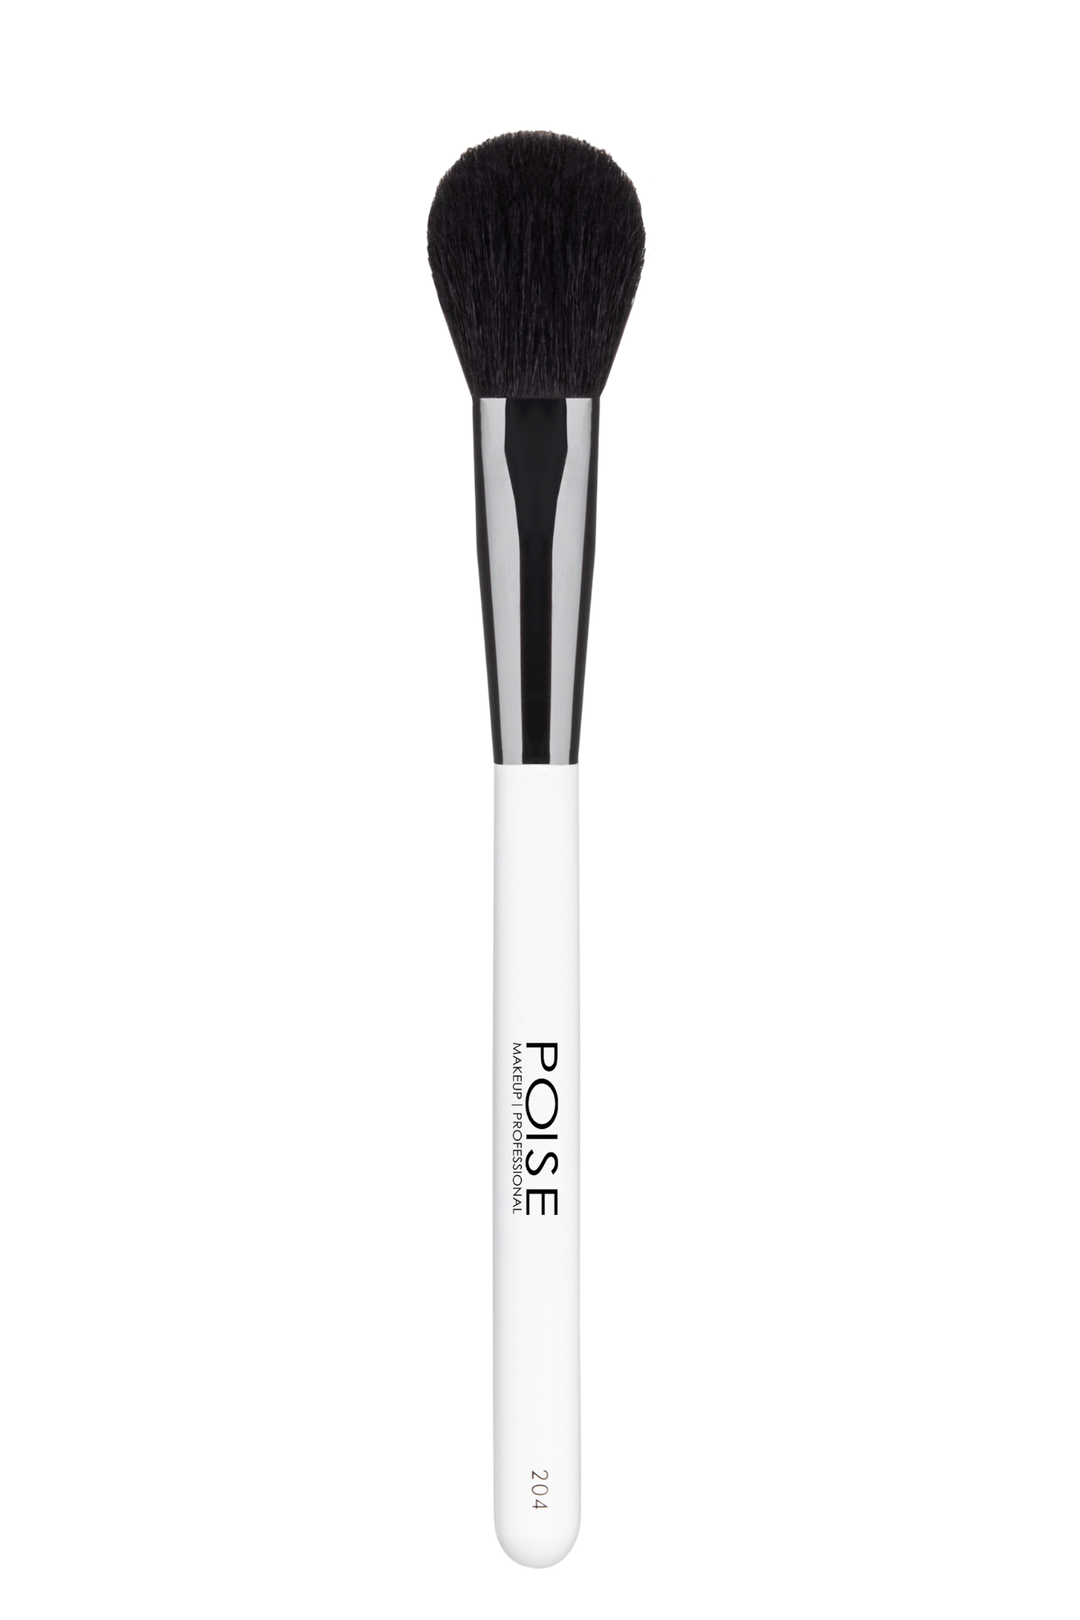 #204 Large Powder Makeup Brush